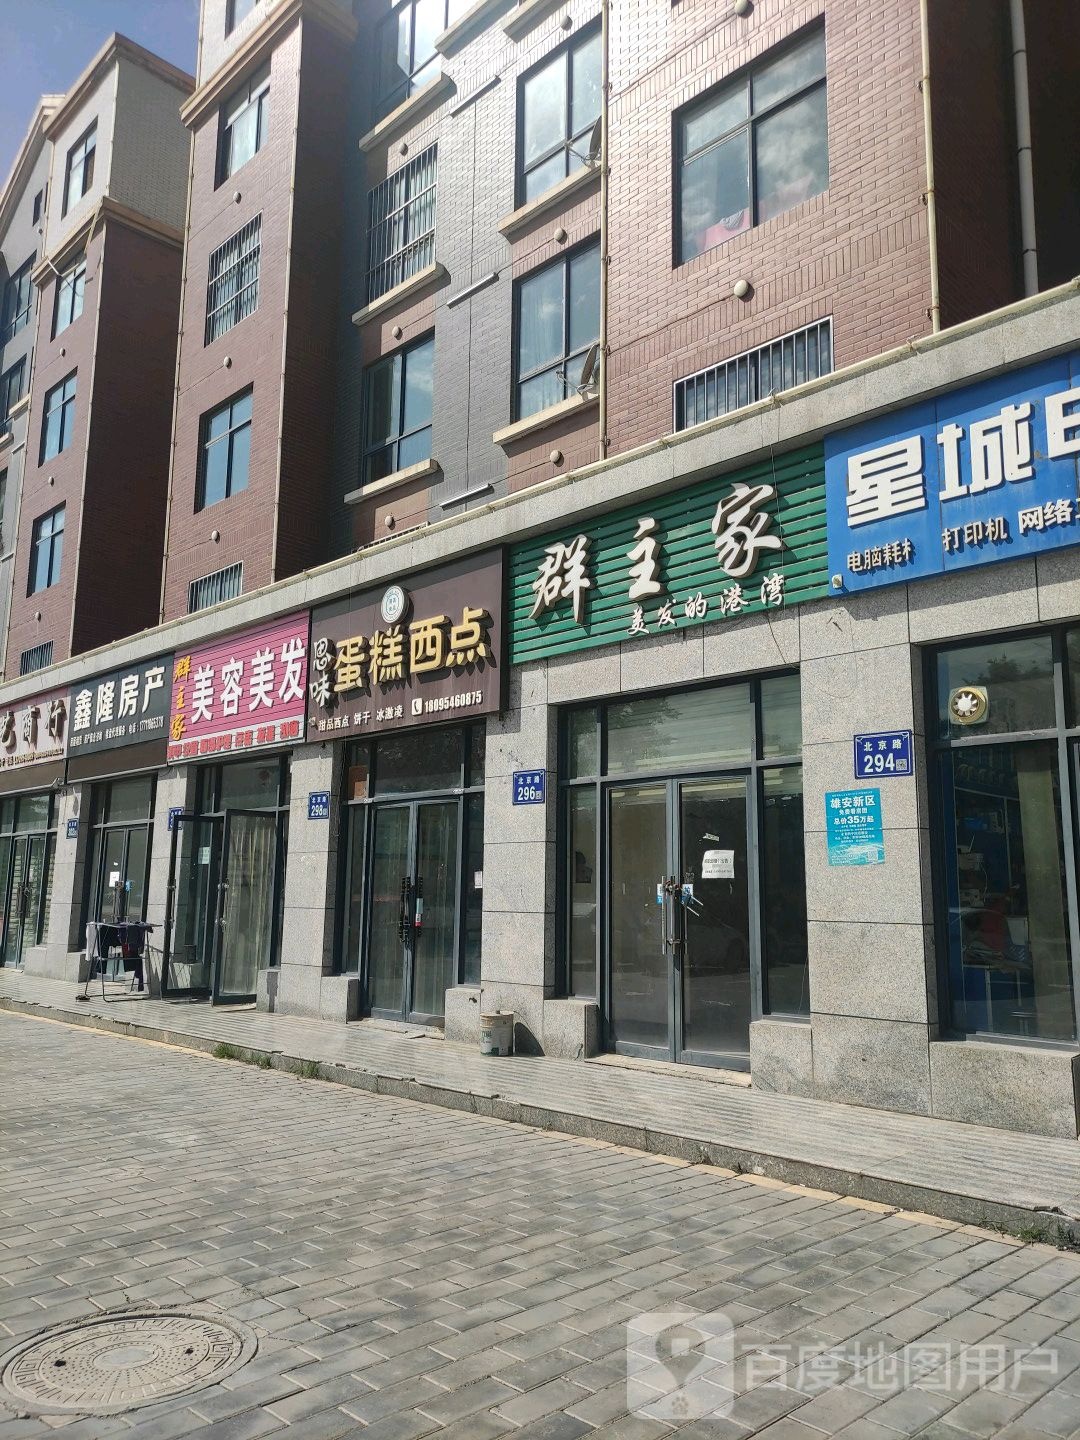 鑫隆房产(北京路店)